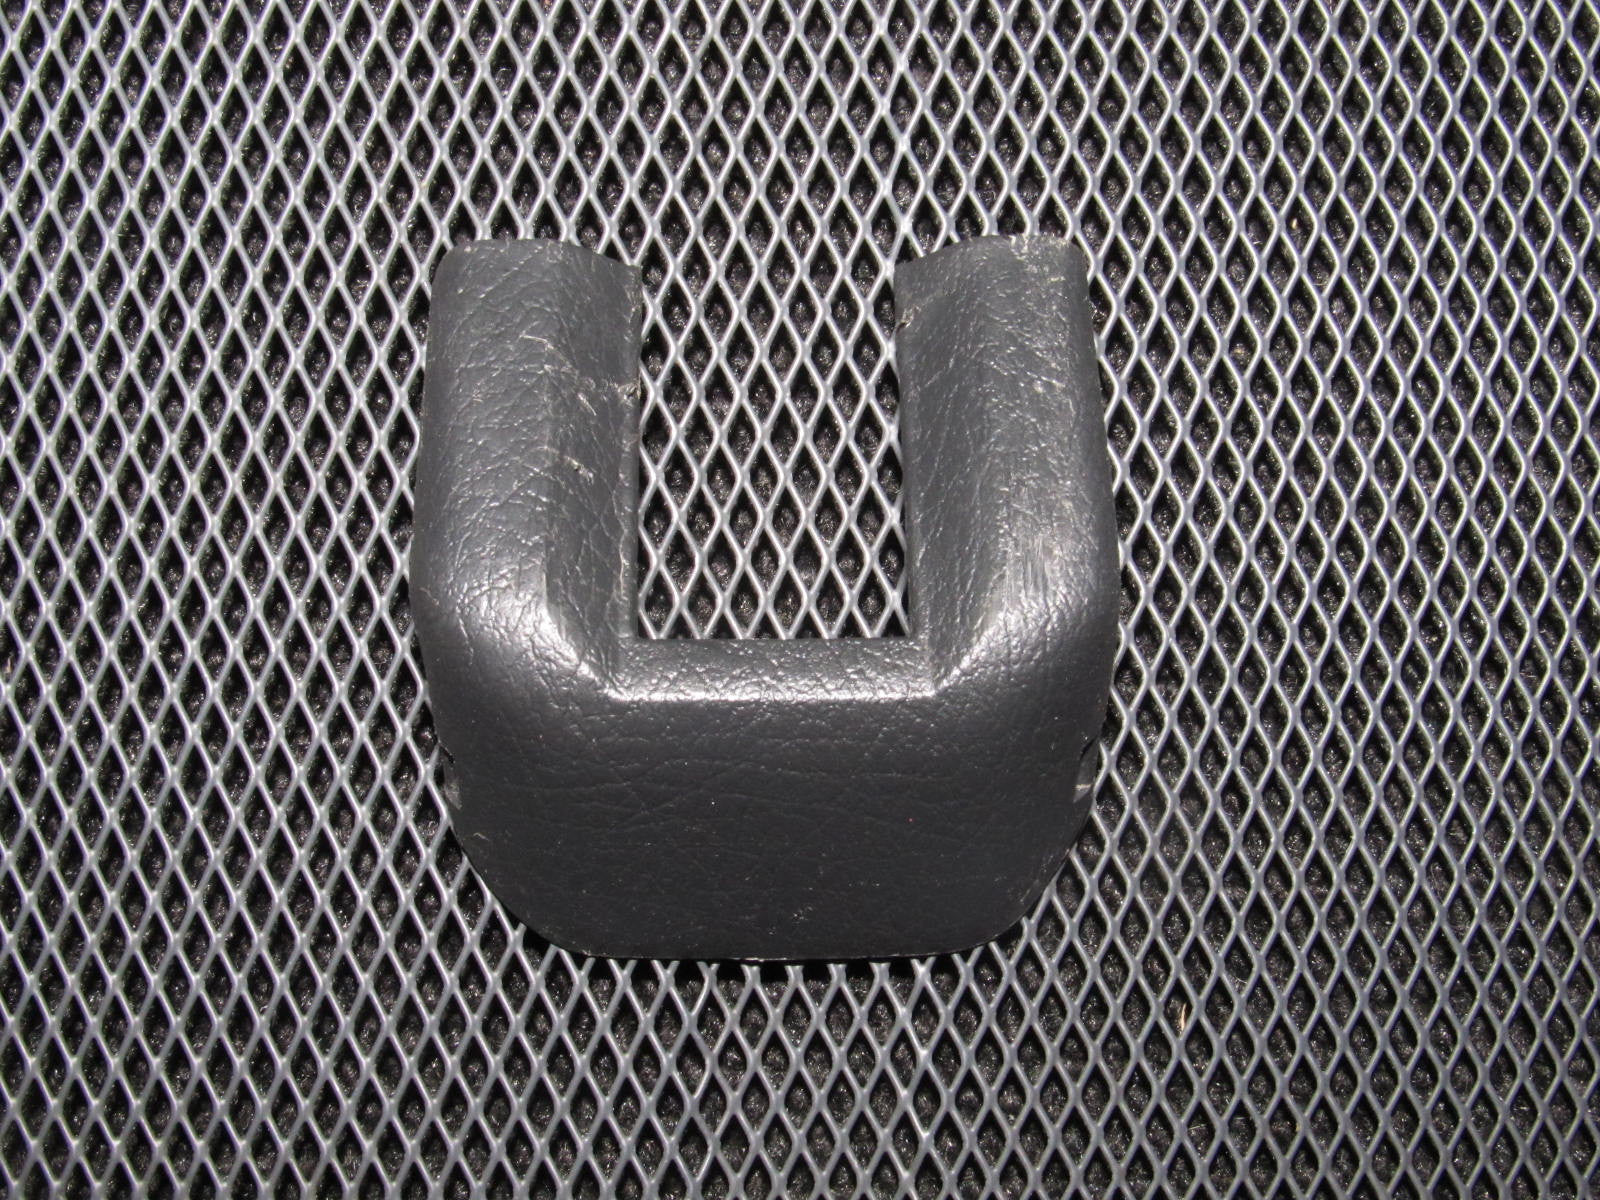 90-93 Acura Integra OEM Black Seat Filler Cover Trim